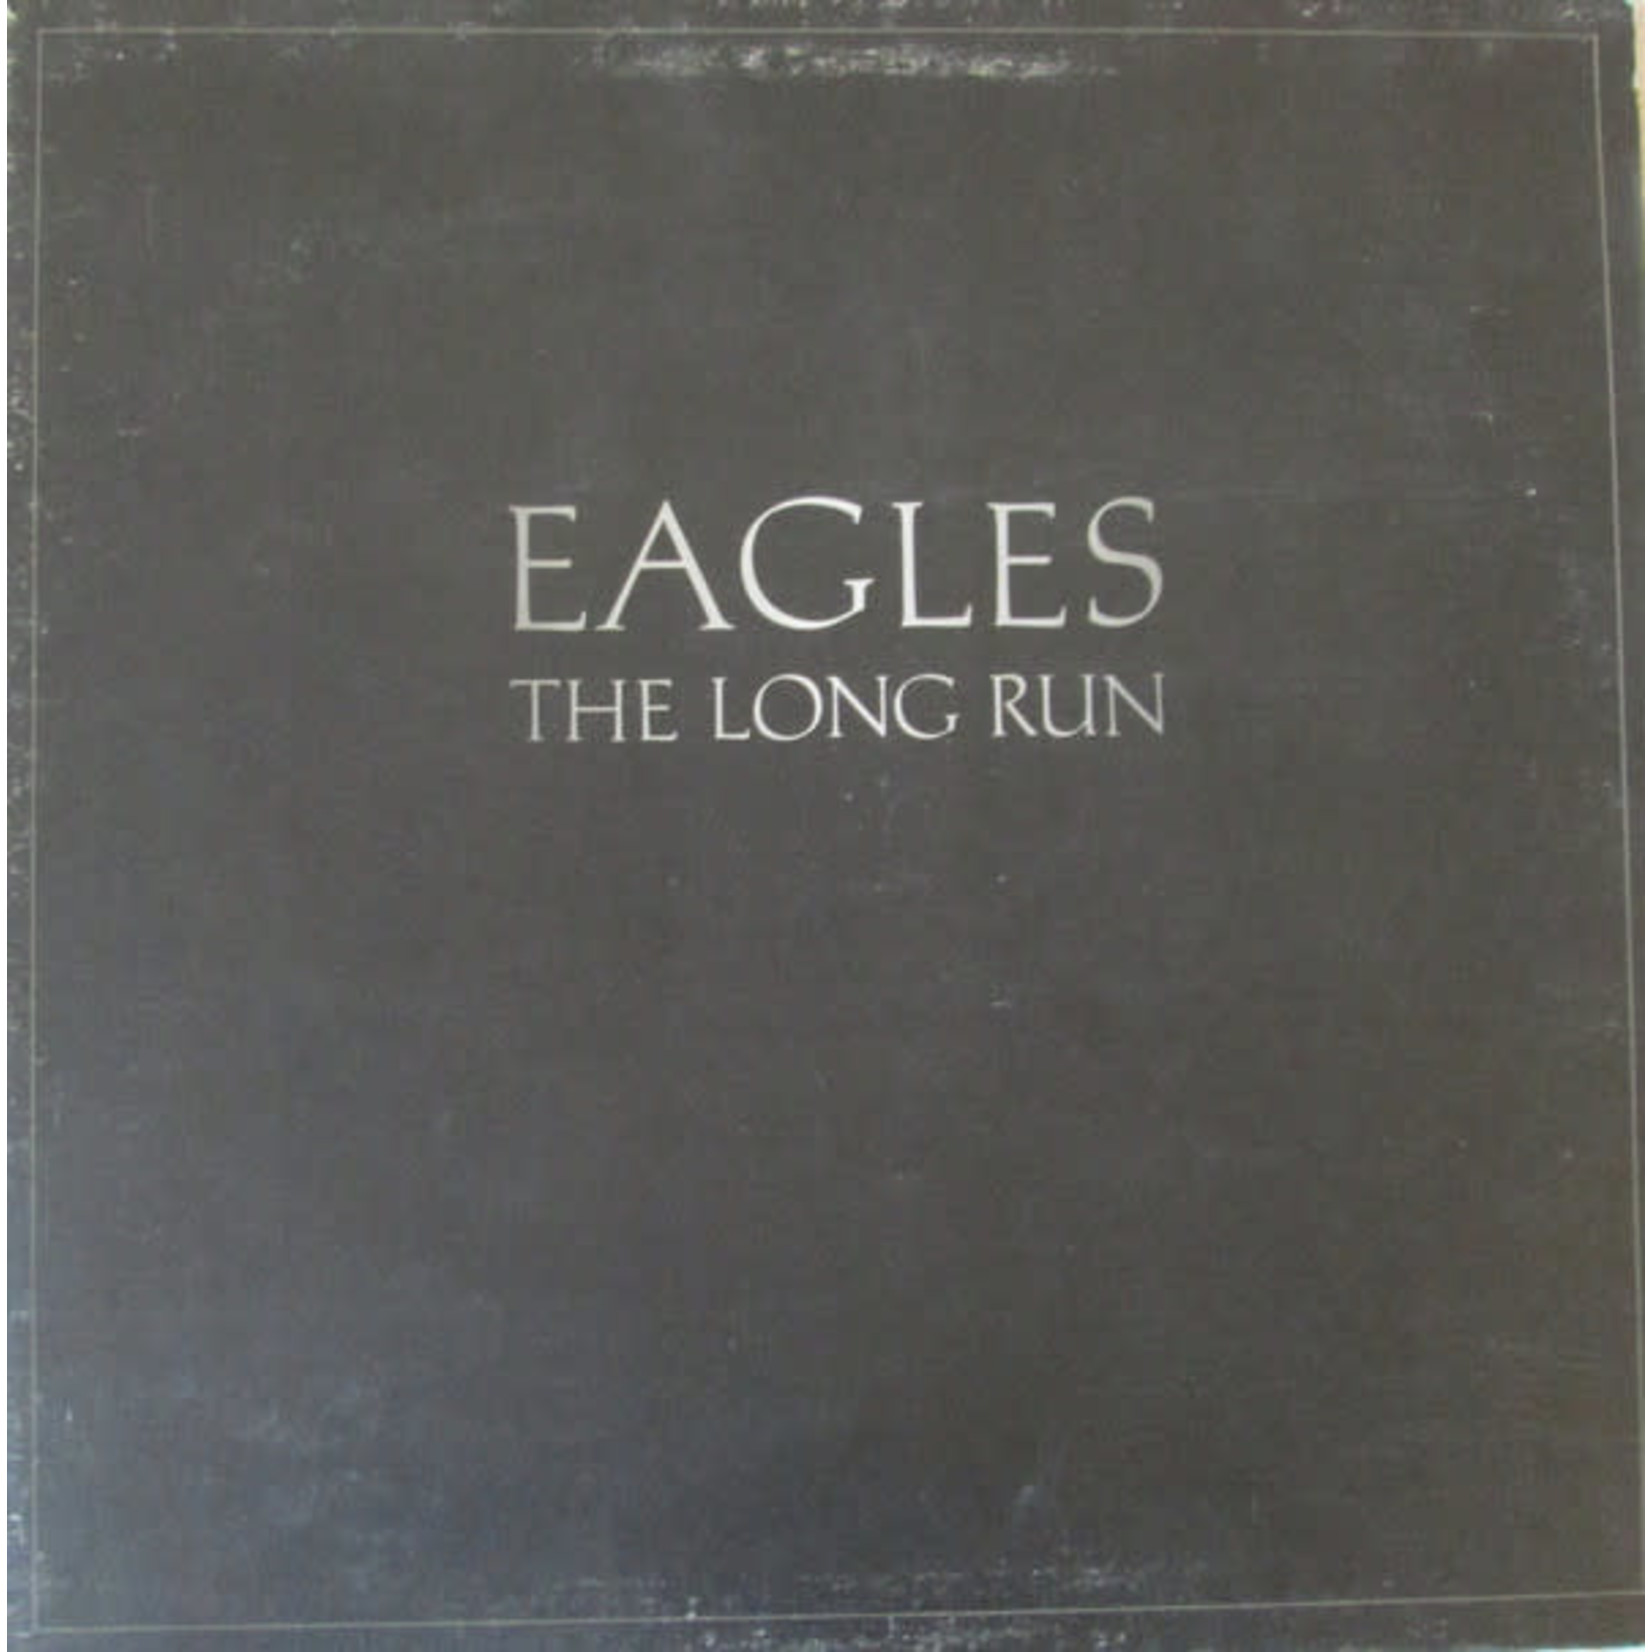 Eagles Eagles - The Long Run (G+, 1979, LP, Asylum Records – X5E-508)